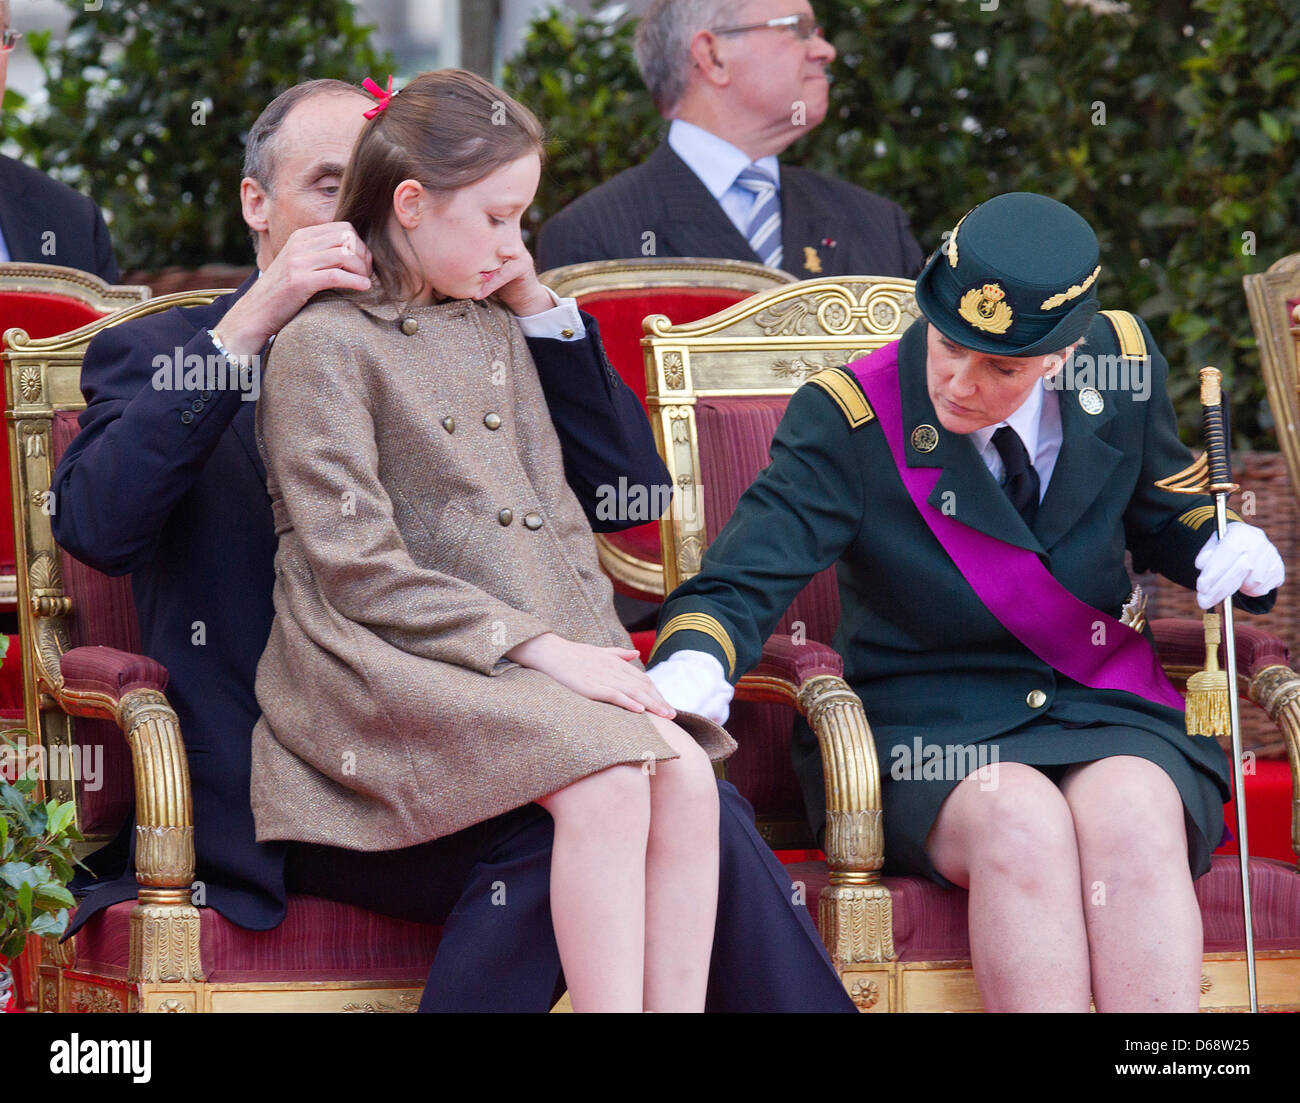 Le Prince Lorenz, la Princesse Laetitia Maria et la Princesse Astrid de Belgique assister à la parade militaire à l'occasion de la fête nationale belge à Bruxelles, Belgique, 21 juillet 2012. Photo : Patrick van Katwijk Pays-bas OUT Banque D'Images